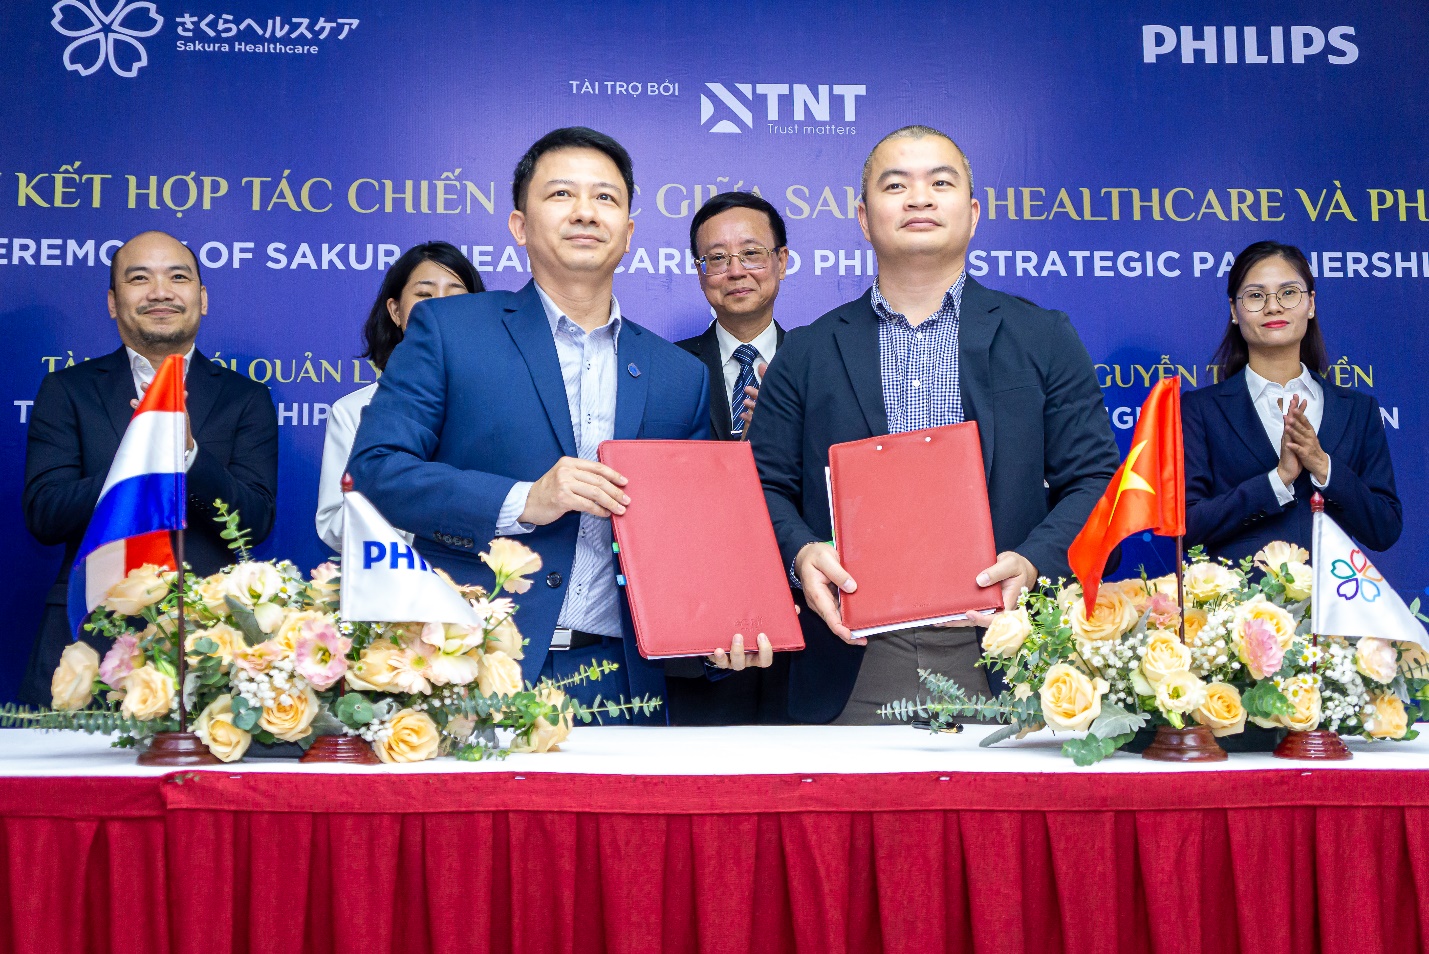 Lễ ký kết hợp tác chiến lược giữa Hệ thống Y tế Sakura và Philips diễn ra vào sáng ngày 4 tháng 6 năm 2023 tại Hà Nội